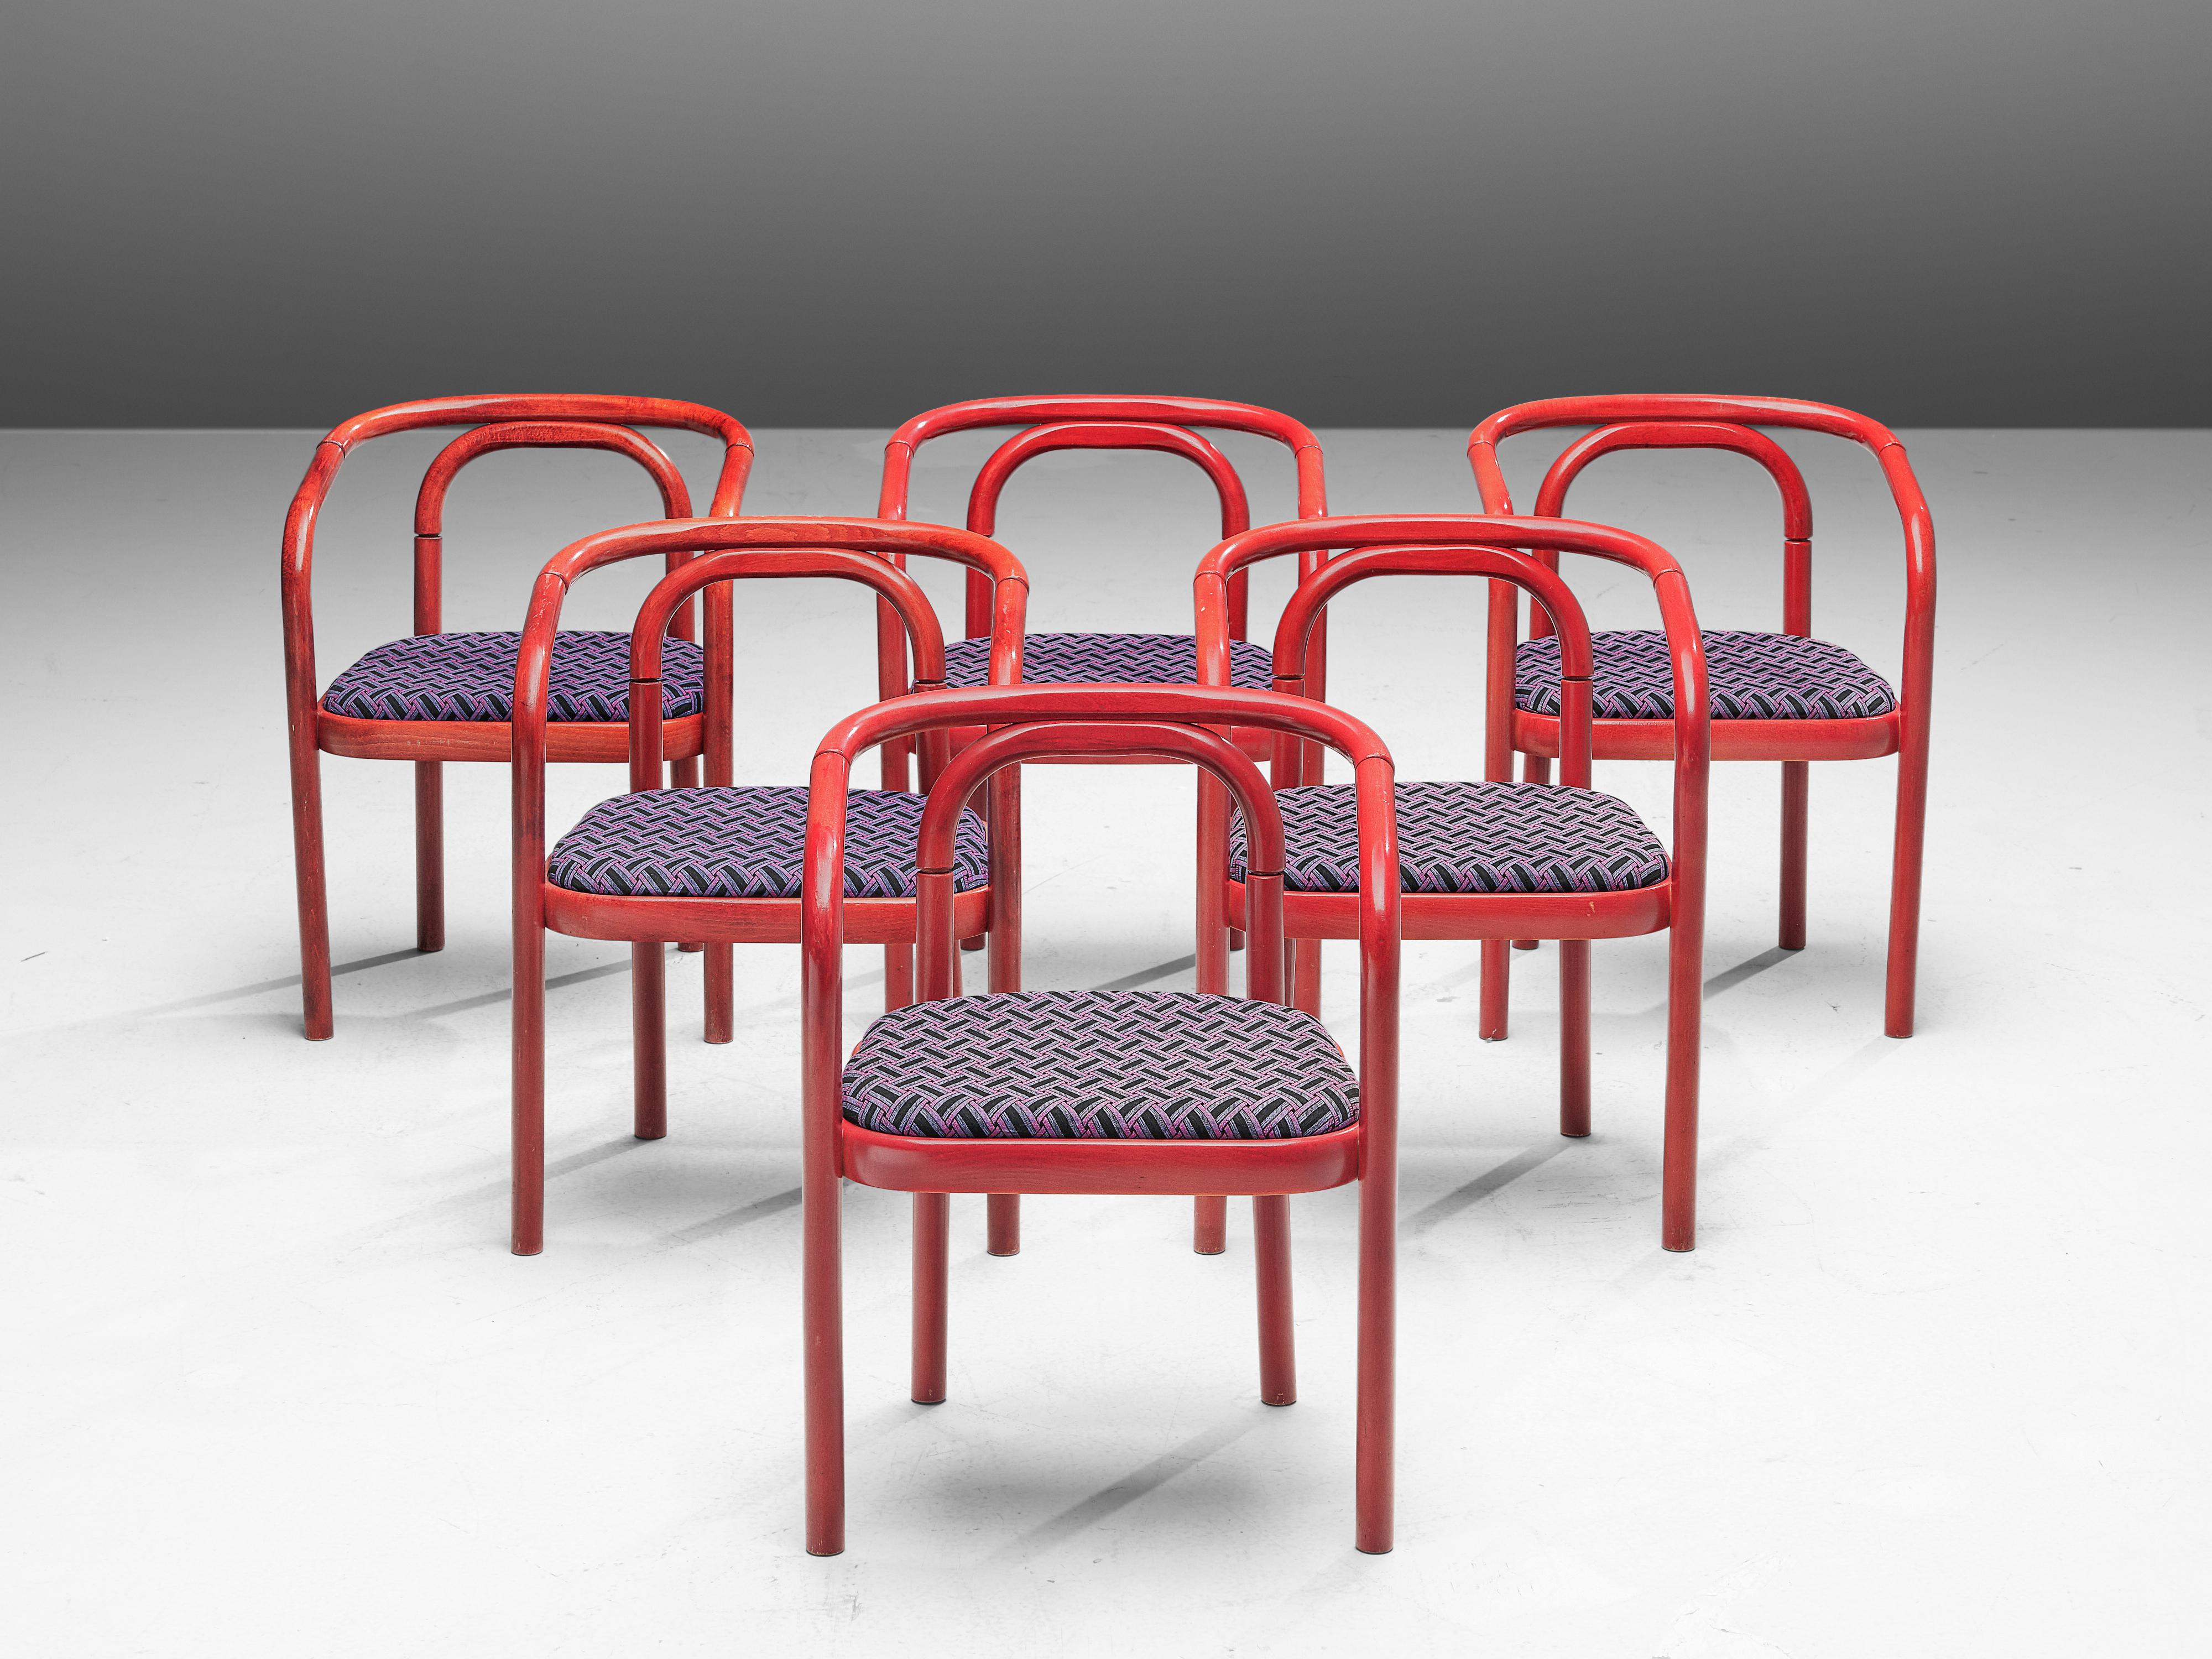 Antonin Suman pour TON, +80 fauteuils modèle E4309, hêtre laqué, tissu, République tchèque, 1977

Un grand ensemble de chaises de salle à manger qui ont été conçues par Antonin Suman et fabriquées par TON. Ces chaises sont dotées d'un magnifique